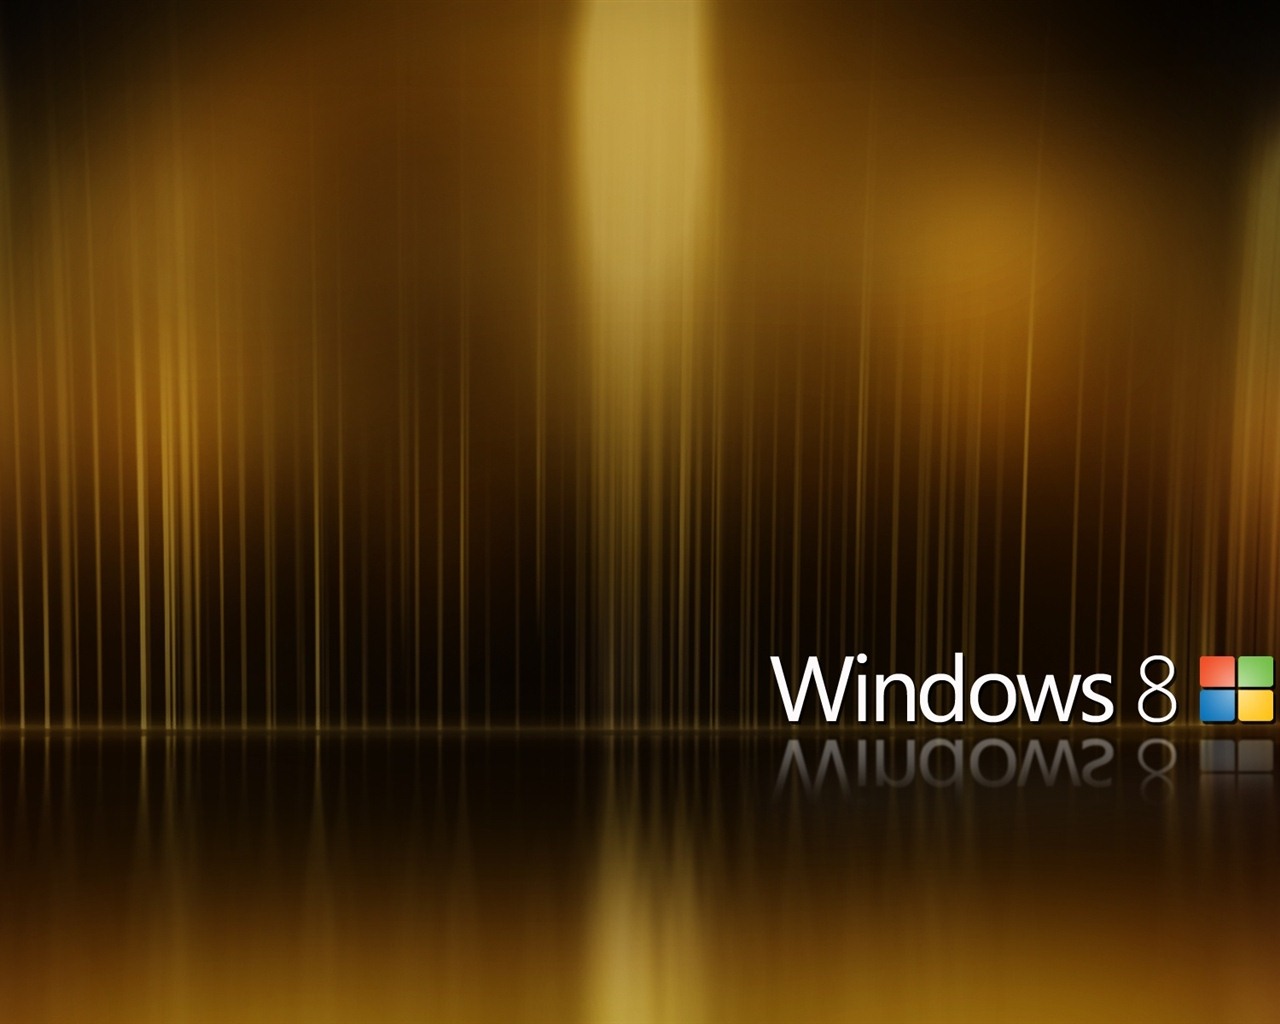 Fond d'écran Windows 8 Theme (2) #8 - 1280x1024